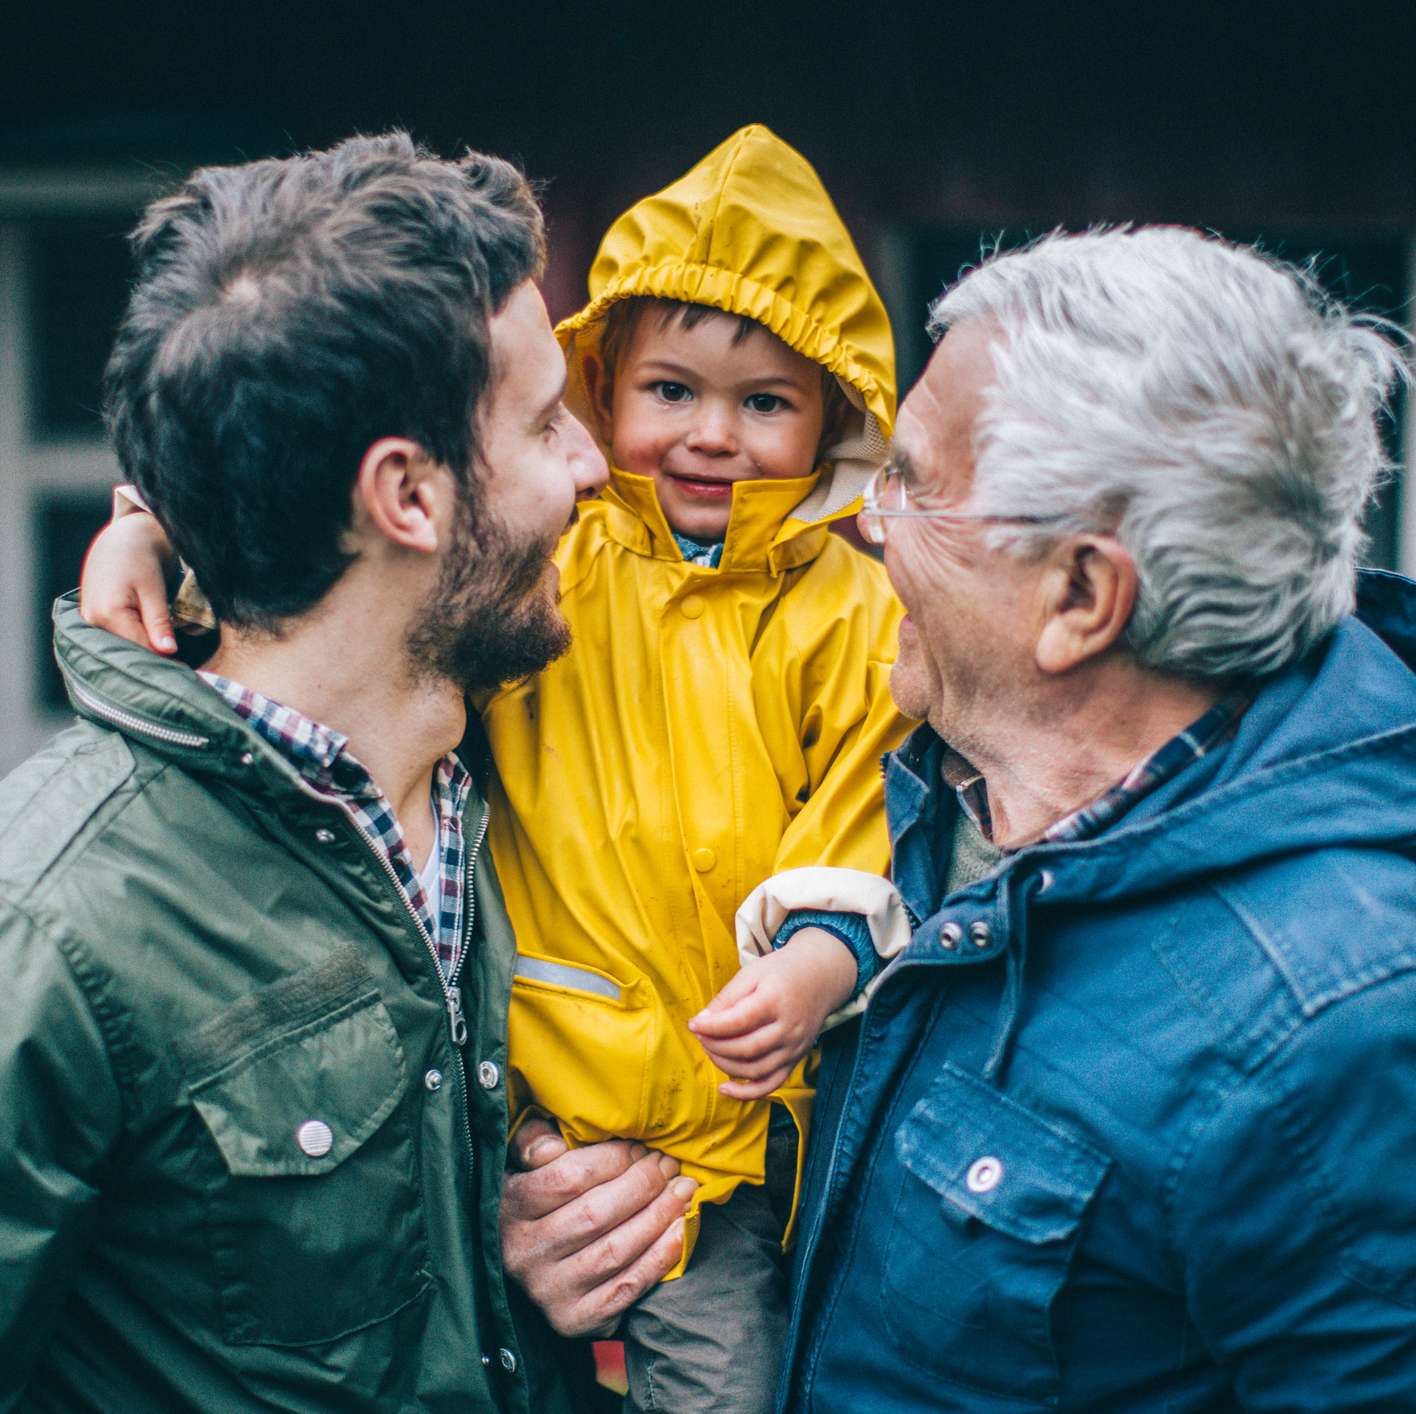 Allianz - Rentenwelt - Rente vererben: Man trägt Kleinkind im gelben Regenmantel auf dem Arm, älterer Mann auf der anderen Seite des Kindes lacht